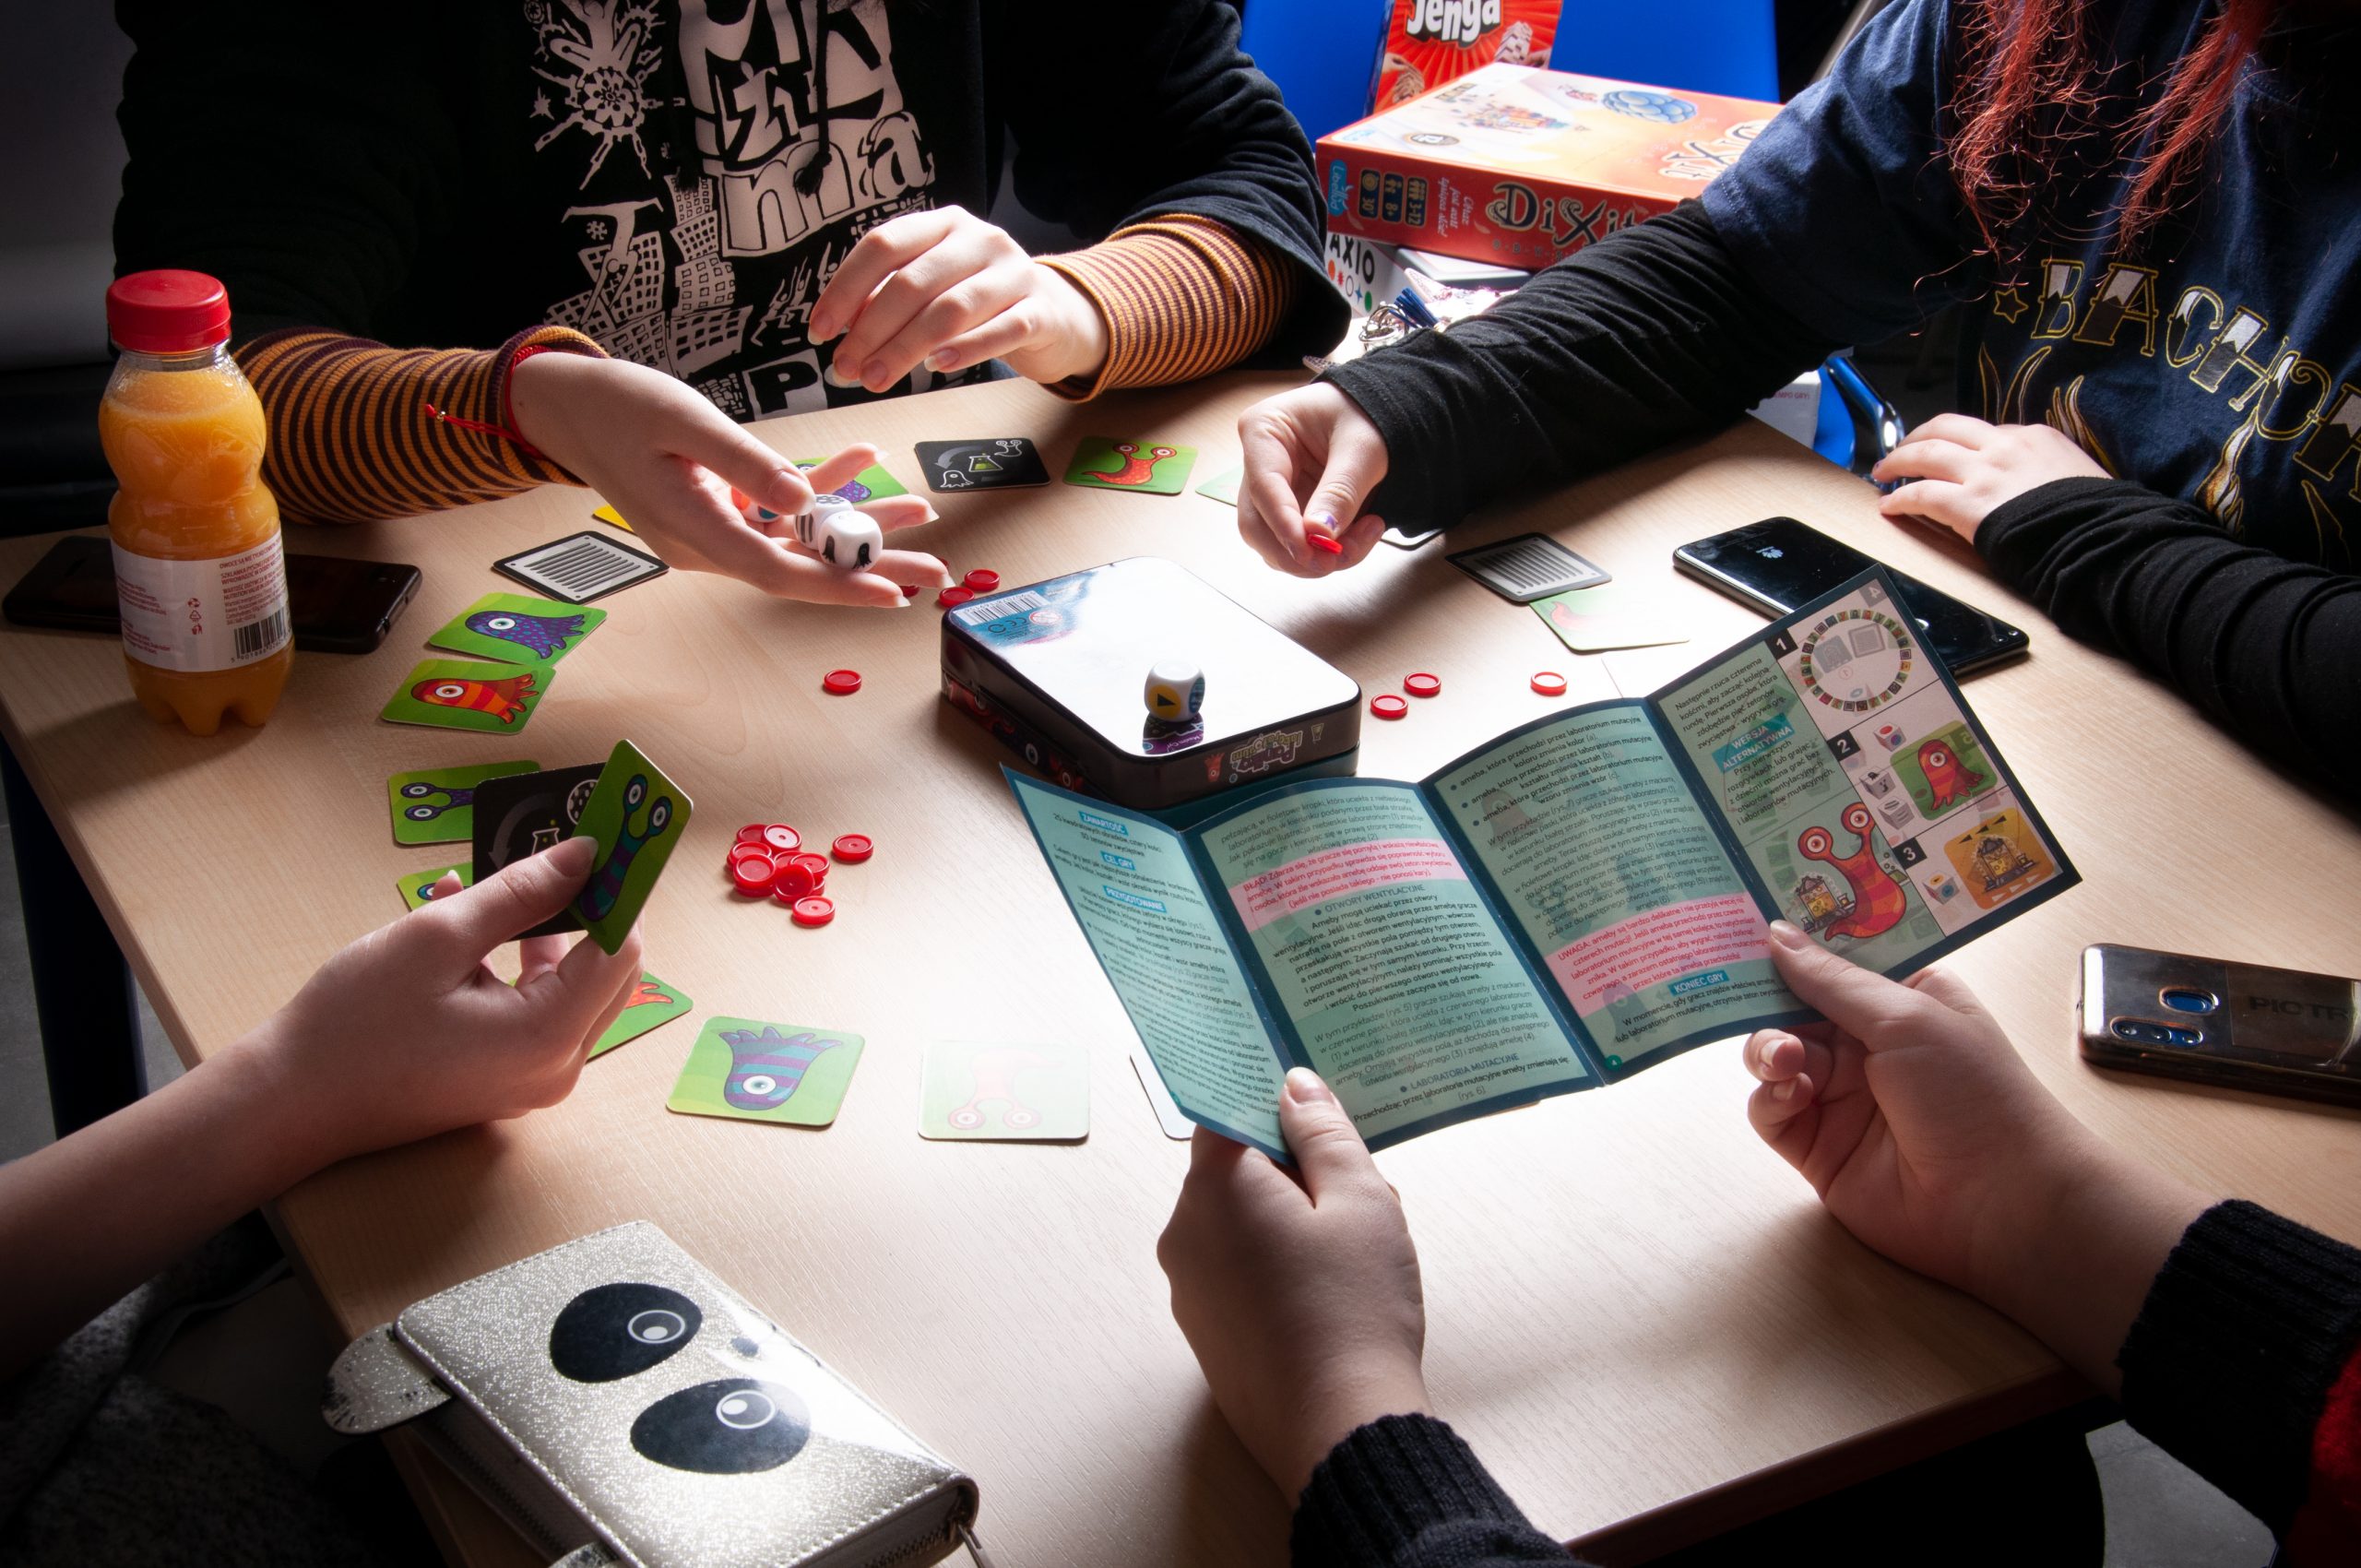 cztery osoby grają w grę planszową, na stoliku karty do gry